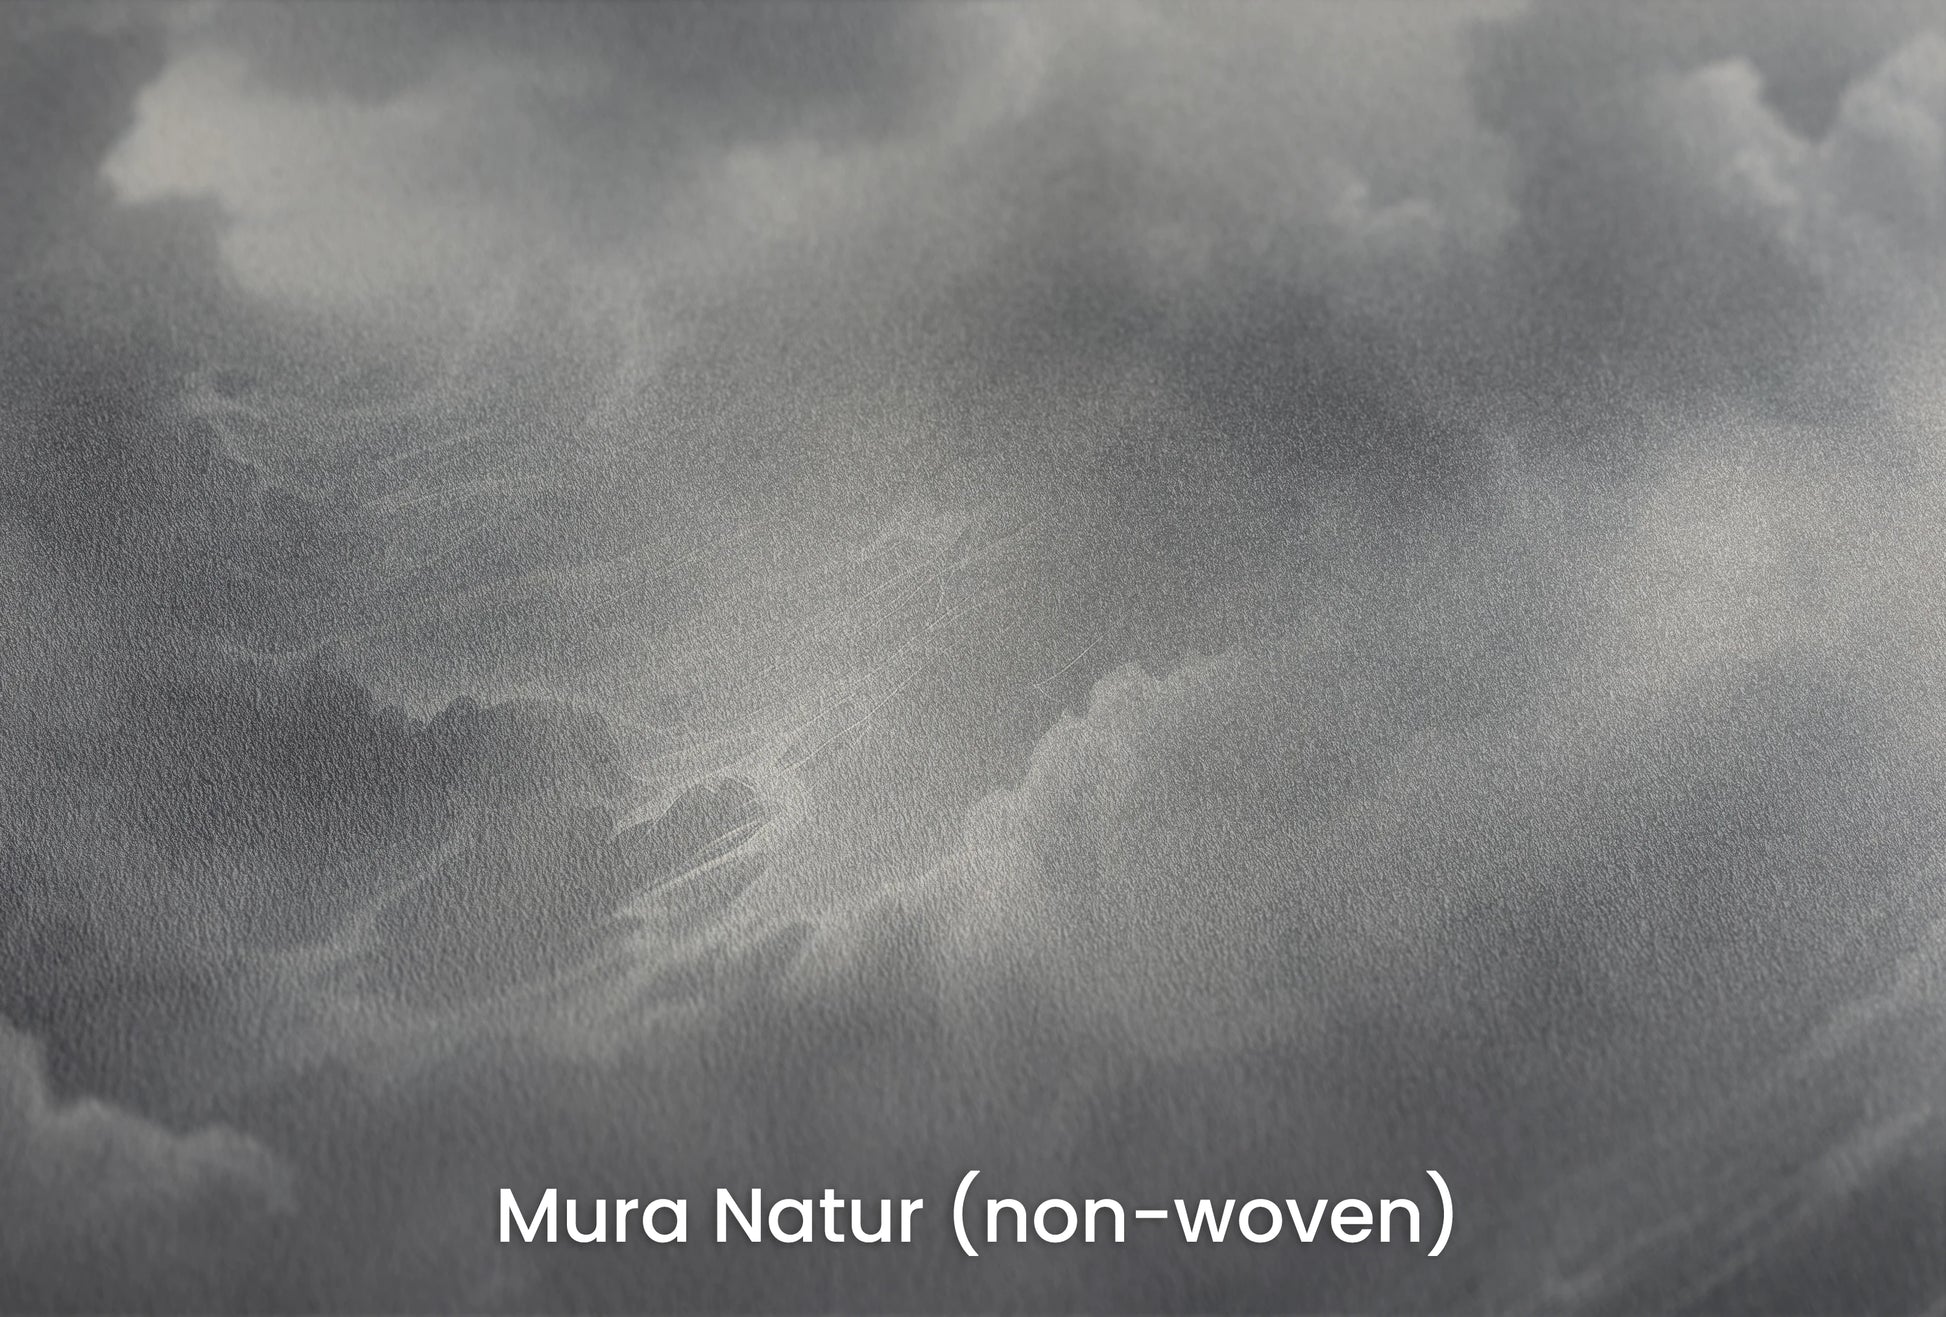 Zbliżenie na artystyczną fototapetę o nazwie Storm's Crescendo na podłożu Mura Natur (non-woven) - naturalne i ekologiczne podłoże.